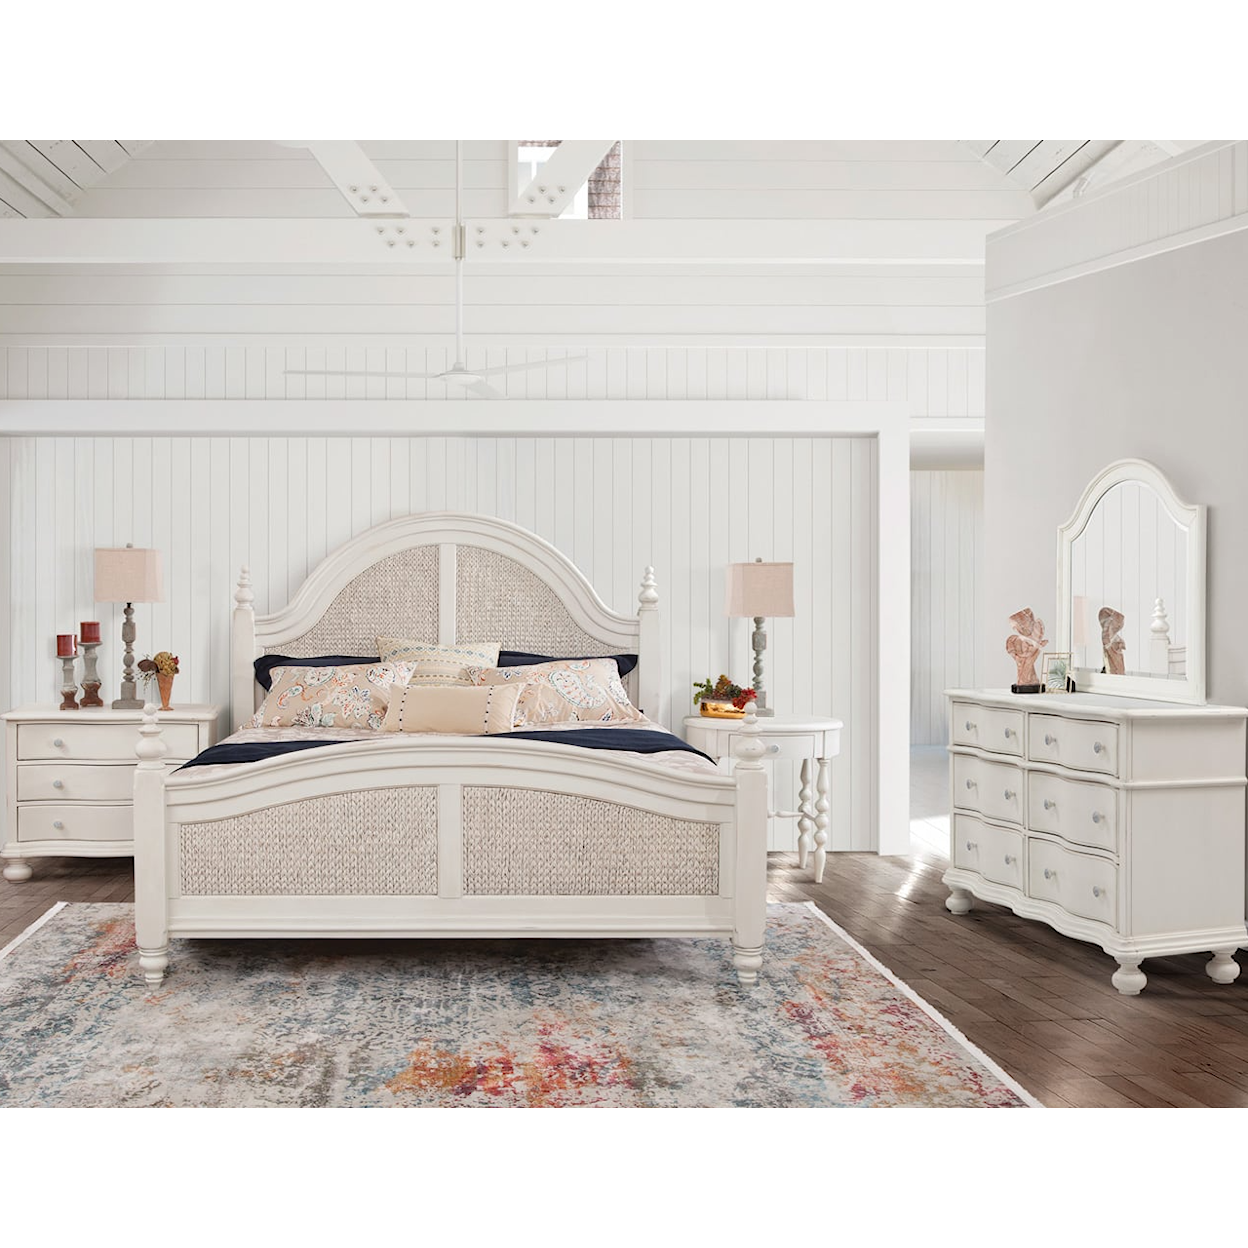 American Woodcrafters Rodanthe Queen Bedroom Set